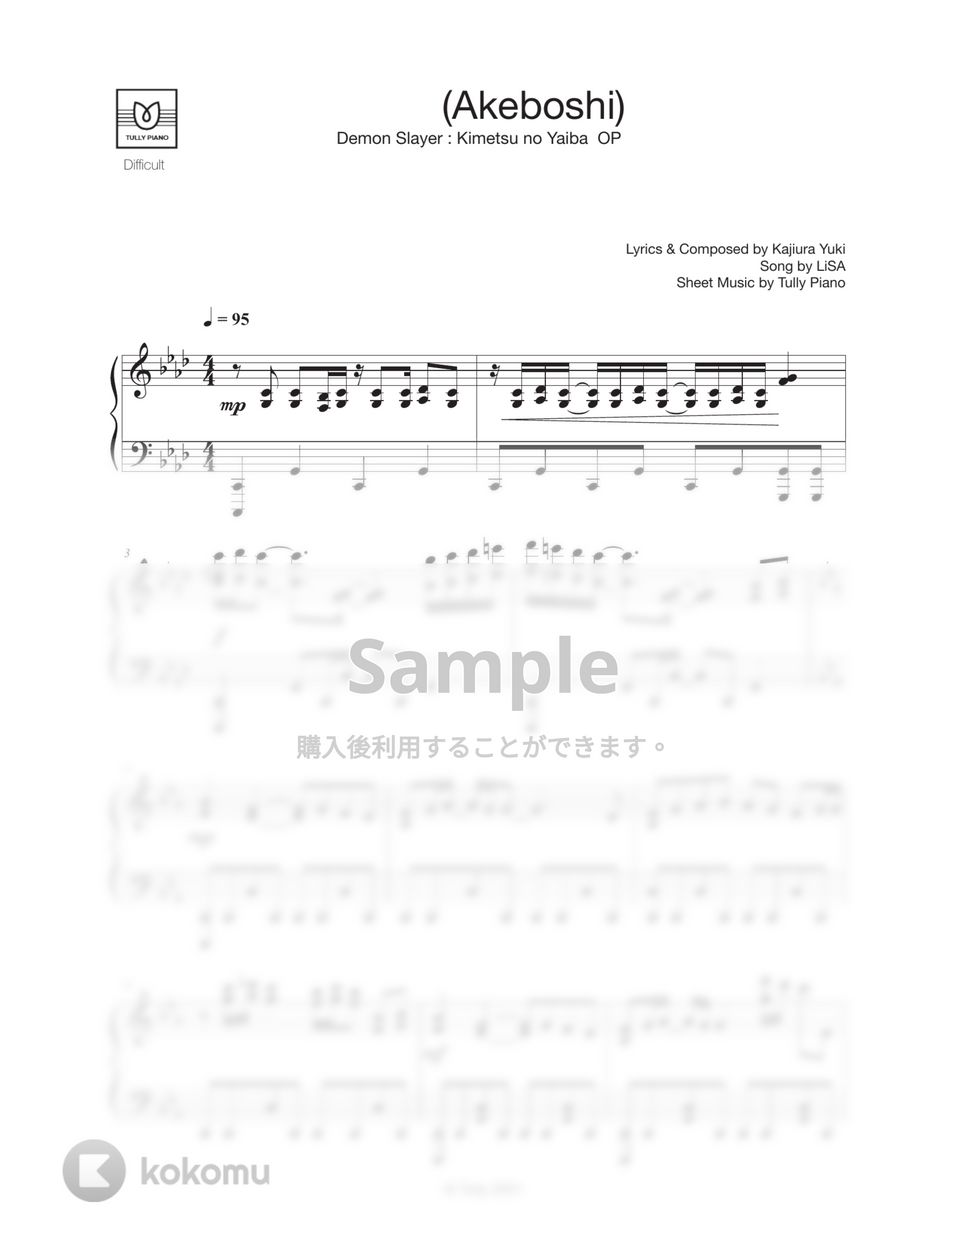 LiSA - 明け星 (上級 / 『鬼滅の刃-無限列車編-OP』) by Tully Piano